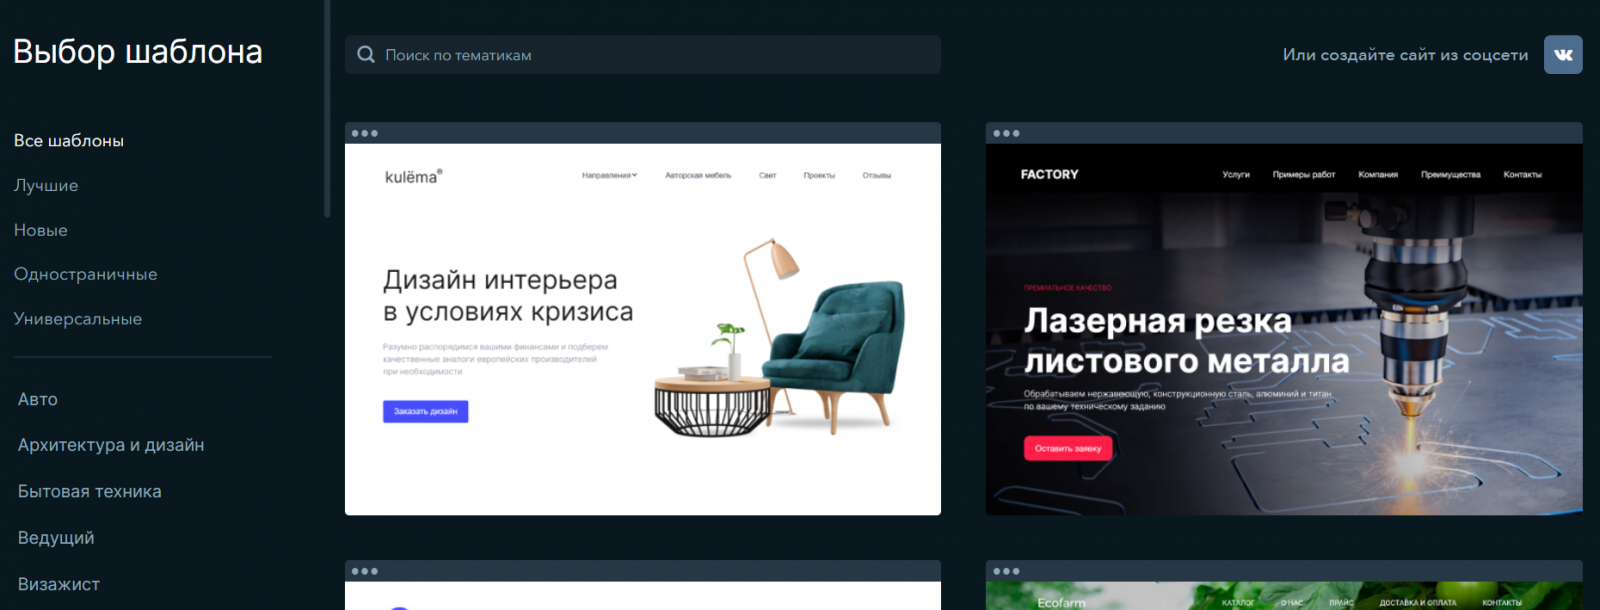 Конструктор сайтов natali-fashion.ru (Юкоз): отзывы, обзор, примеры сайтов